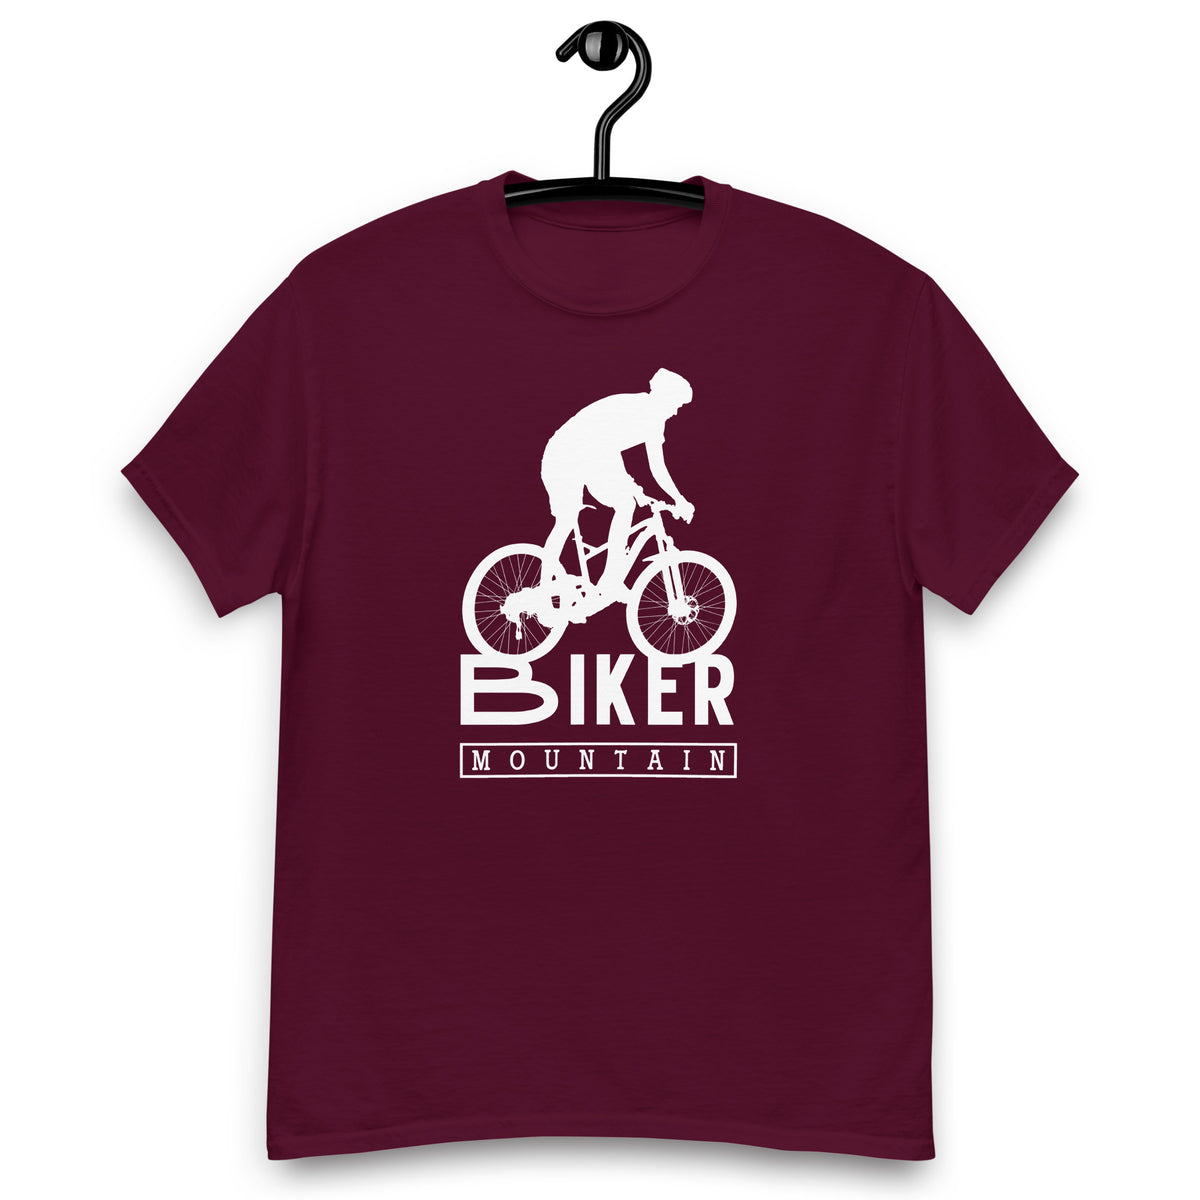 Fahrrad Shirts " Moutain Biker  "